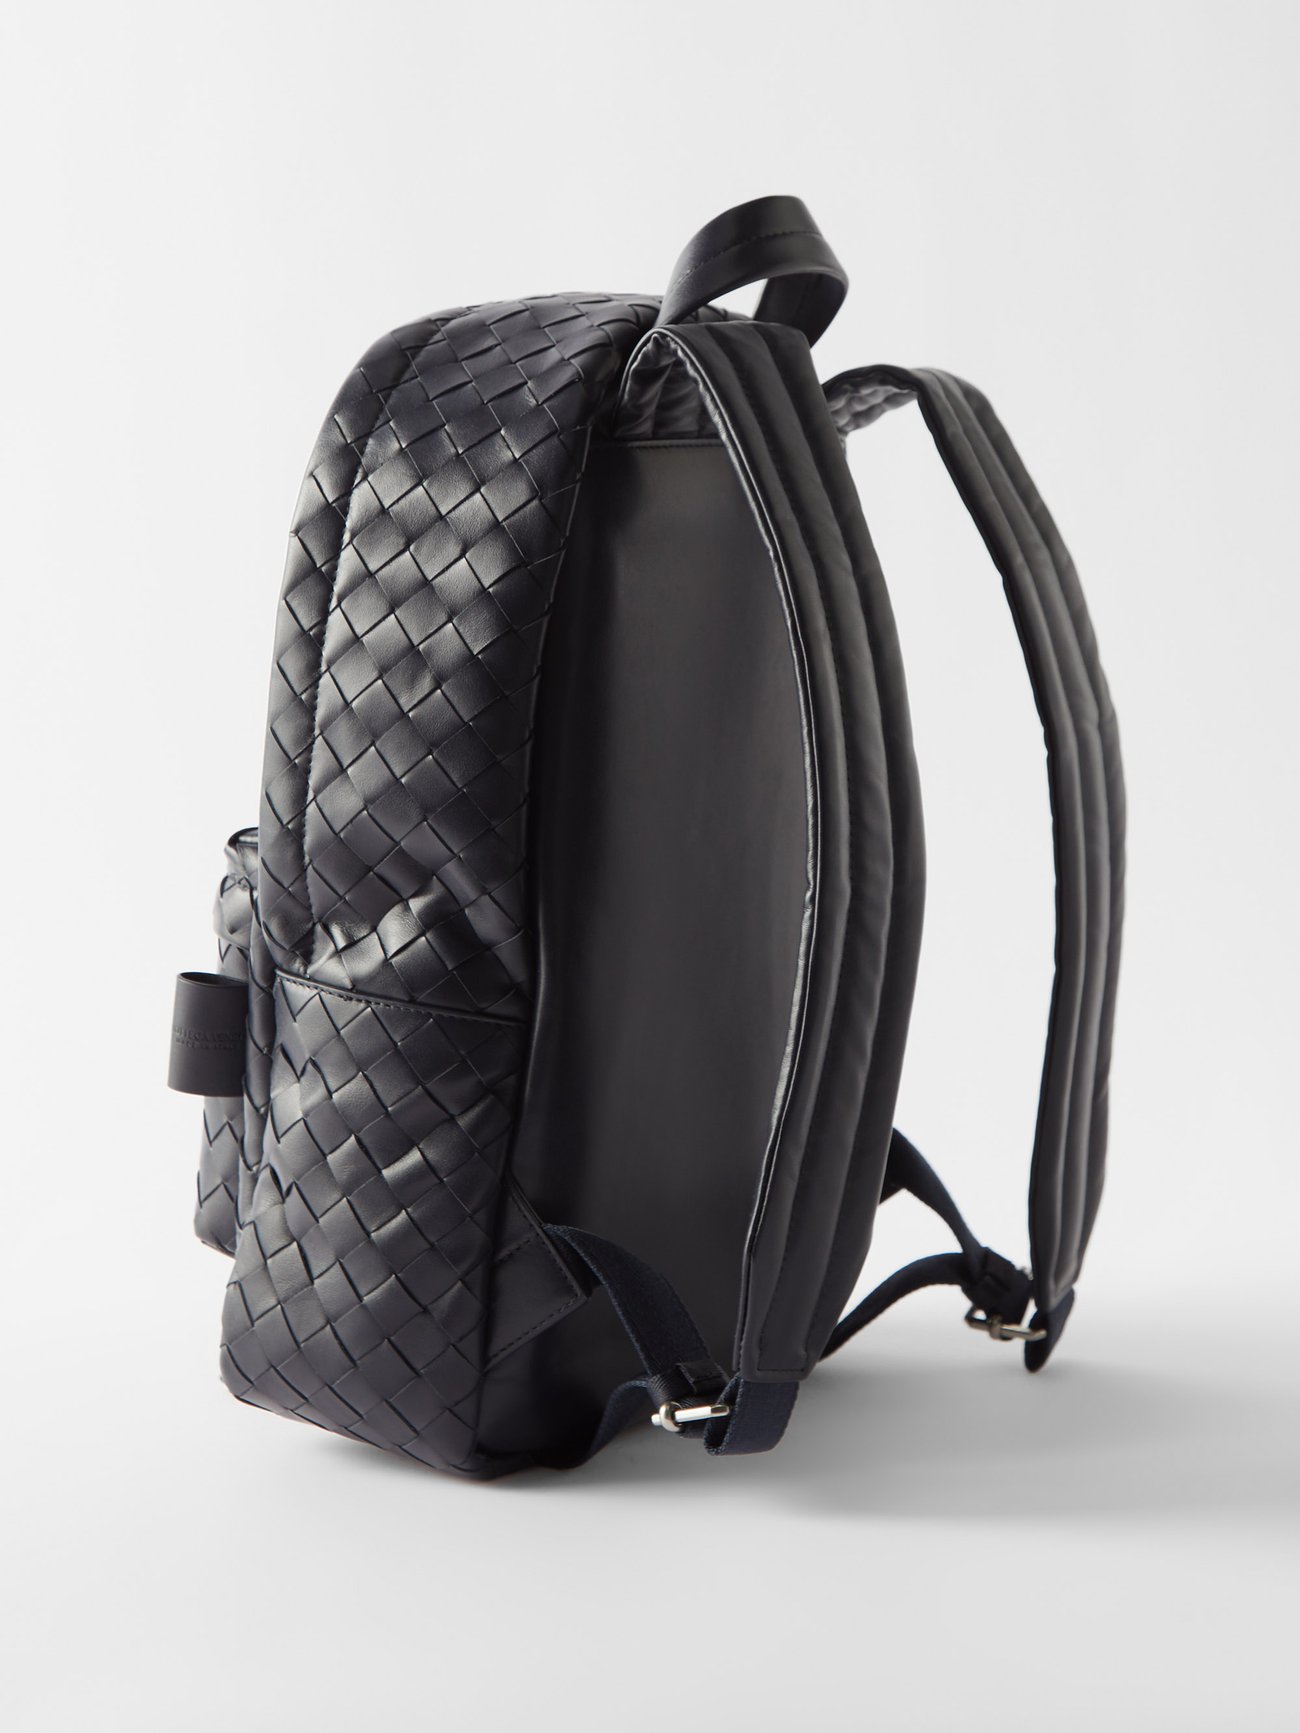 Bottega Veneta Intrecciato Leather Backpack/Rucksack Black